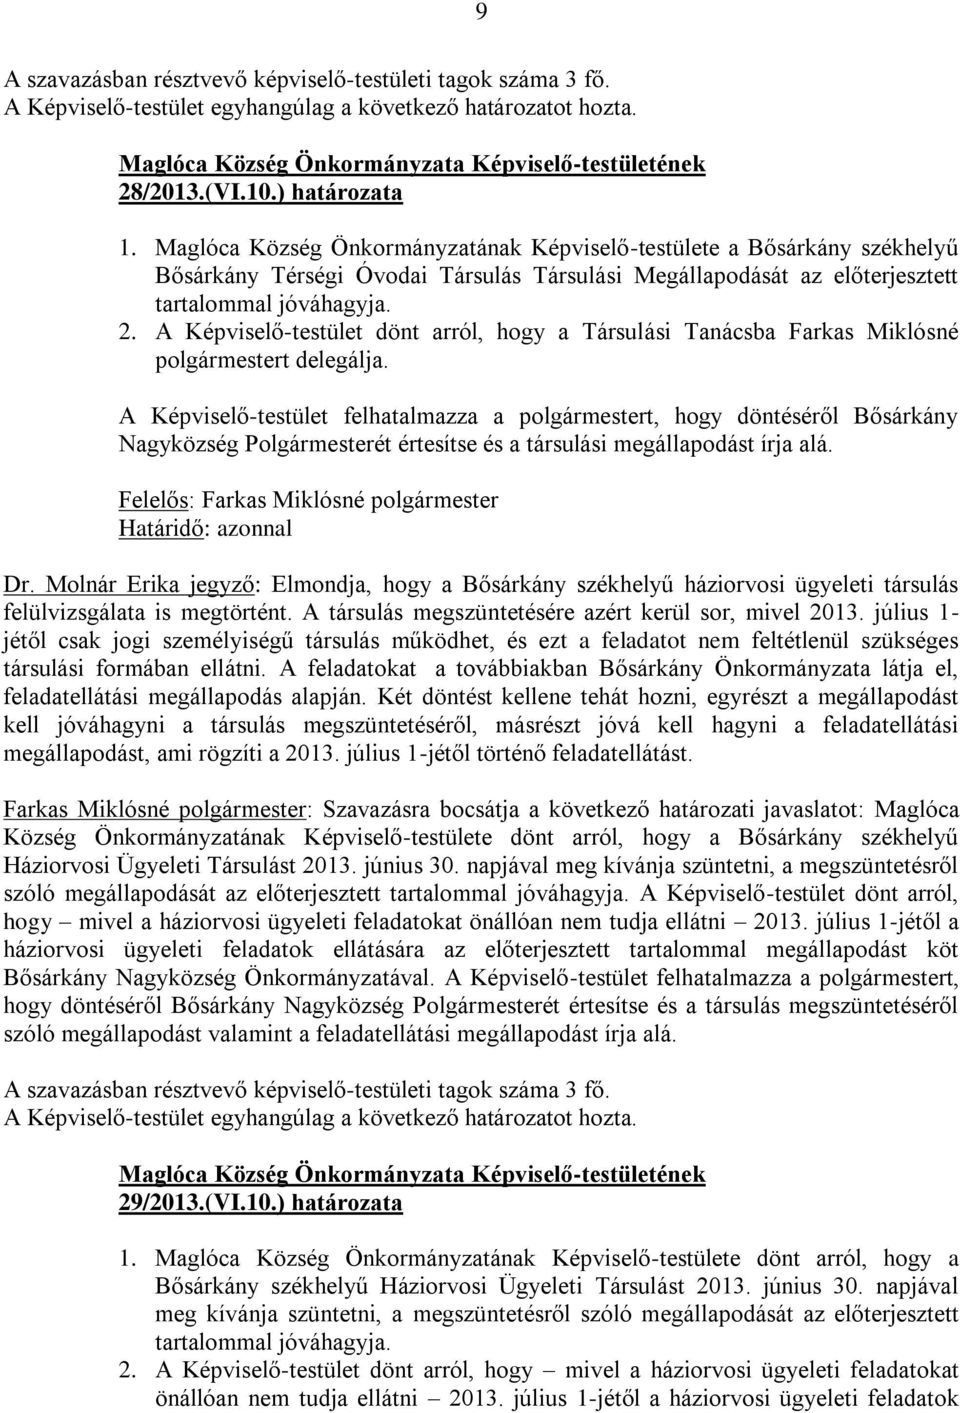 A Képviselő-testület dönt arról, hogy a Társulási Tanácsba Farkas Miklósné polgármestert delegálja.